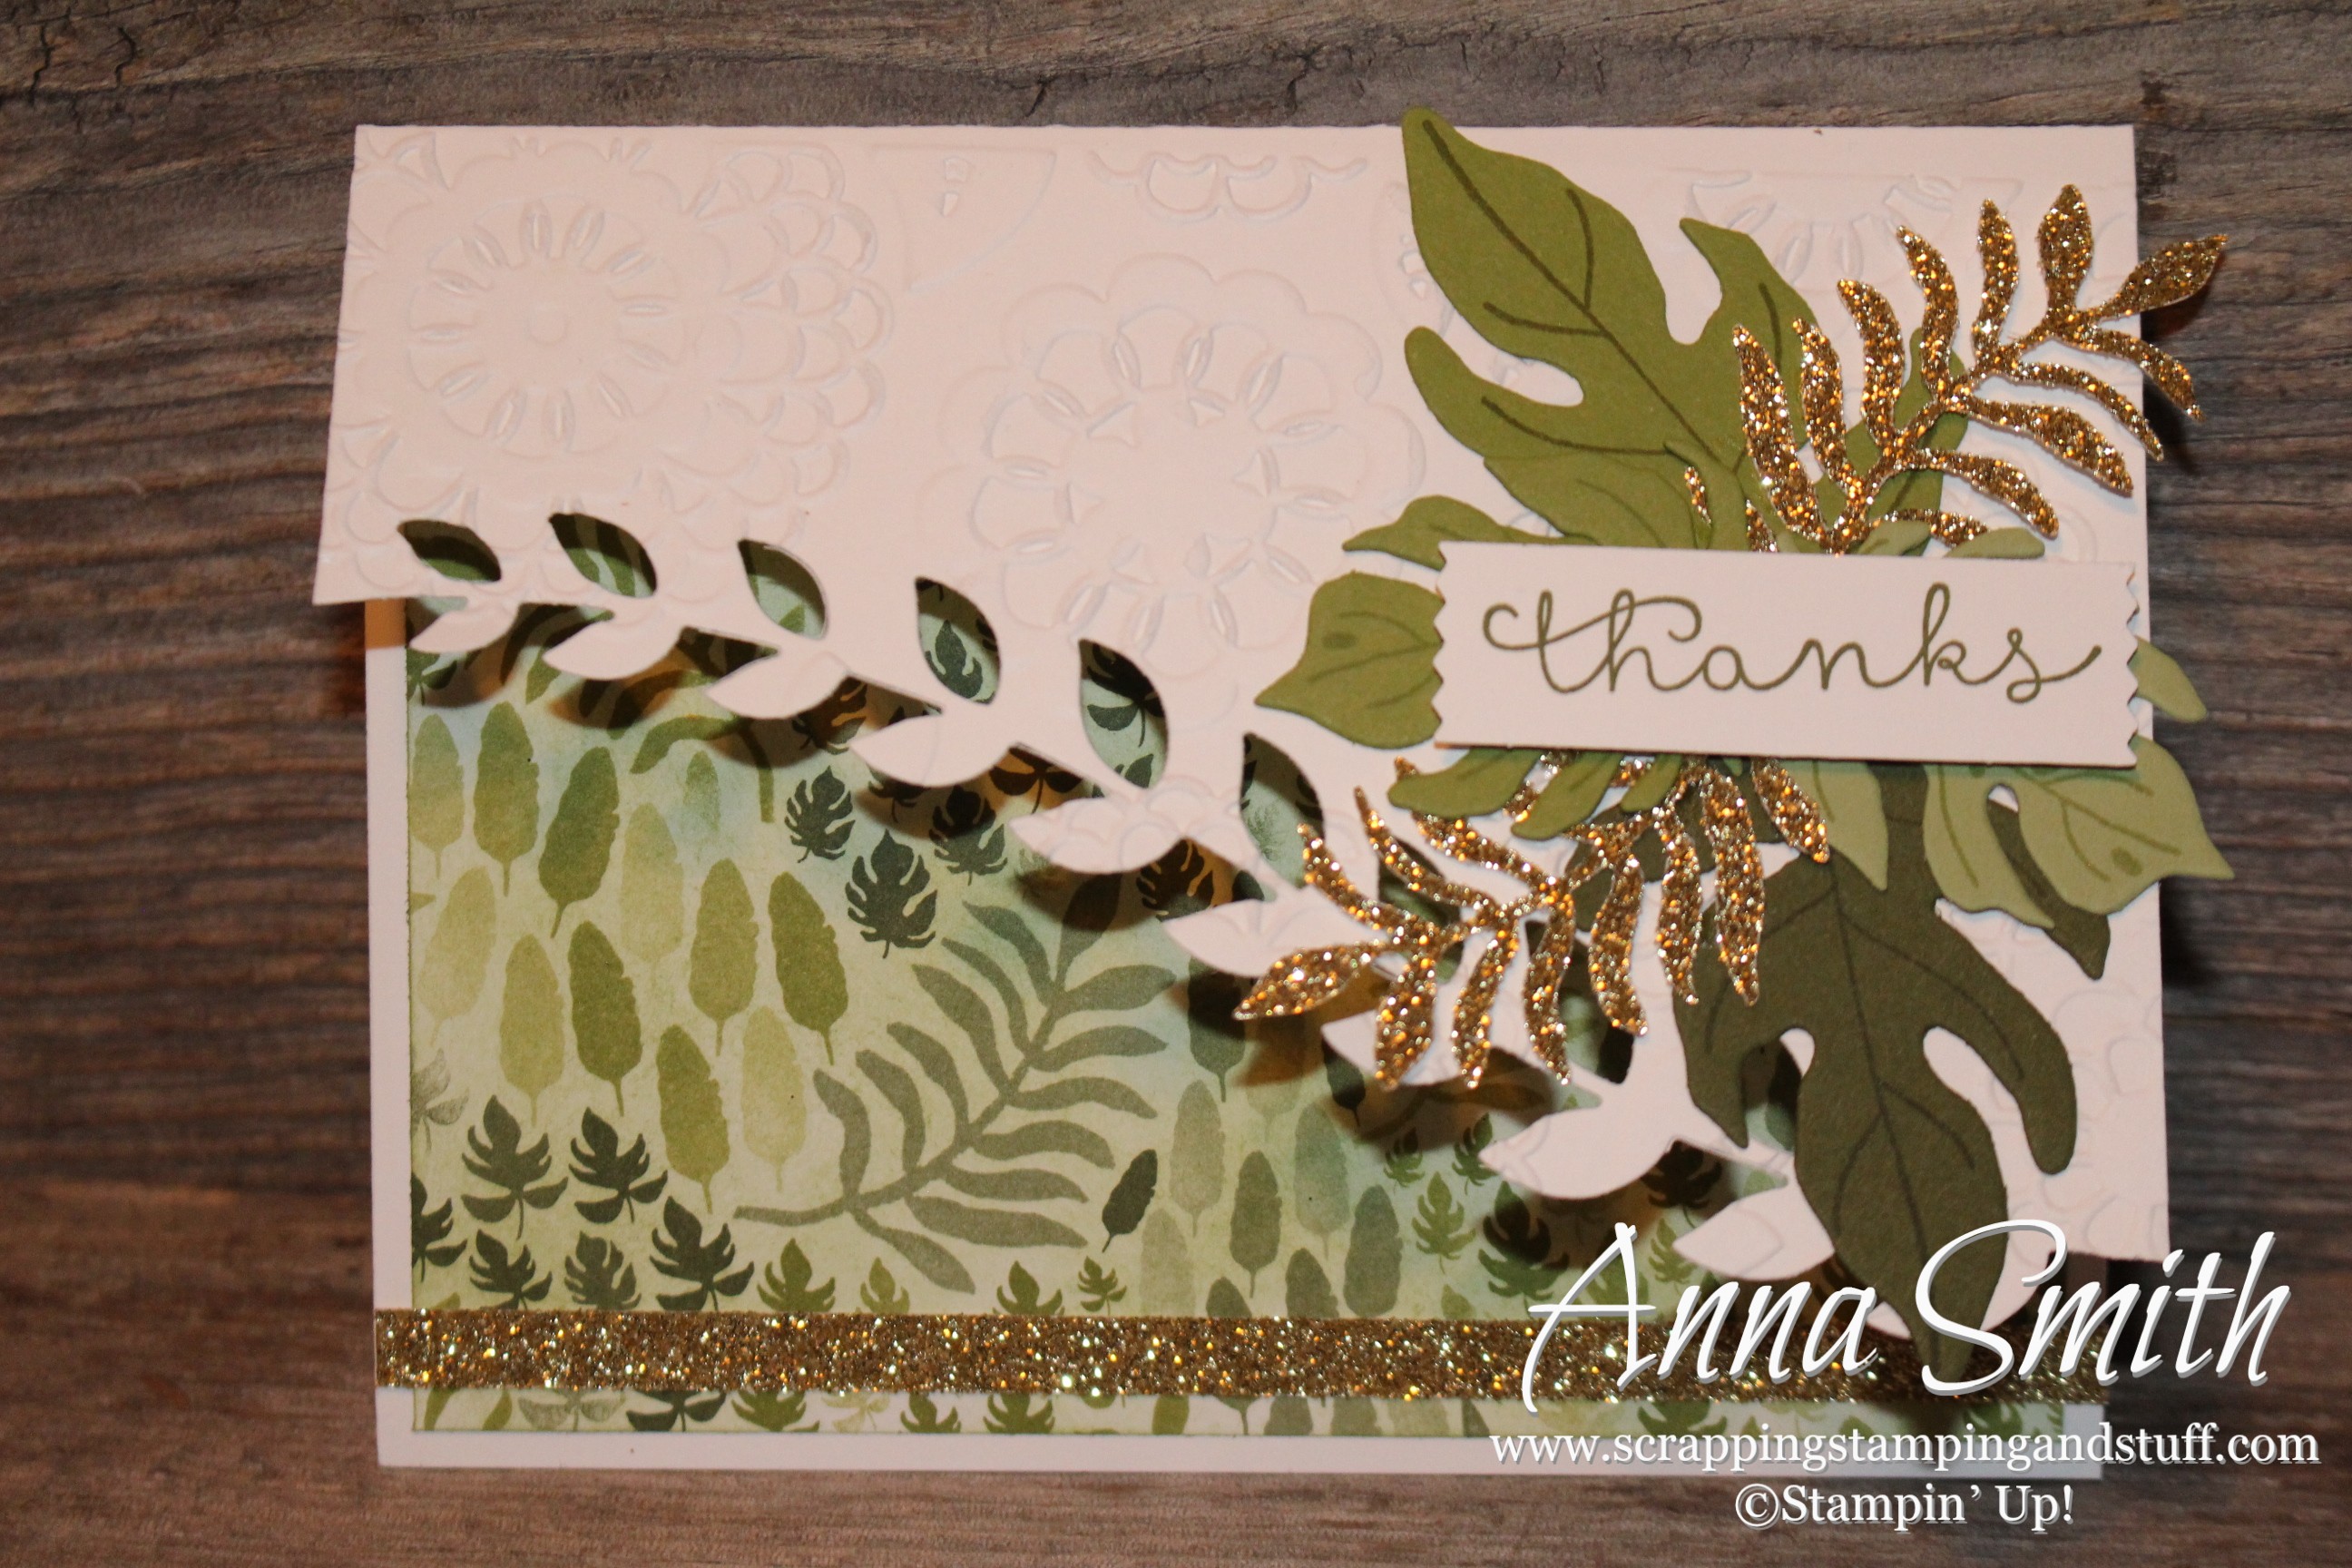 Botanical Blooms Card Stampin' Up!